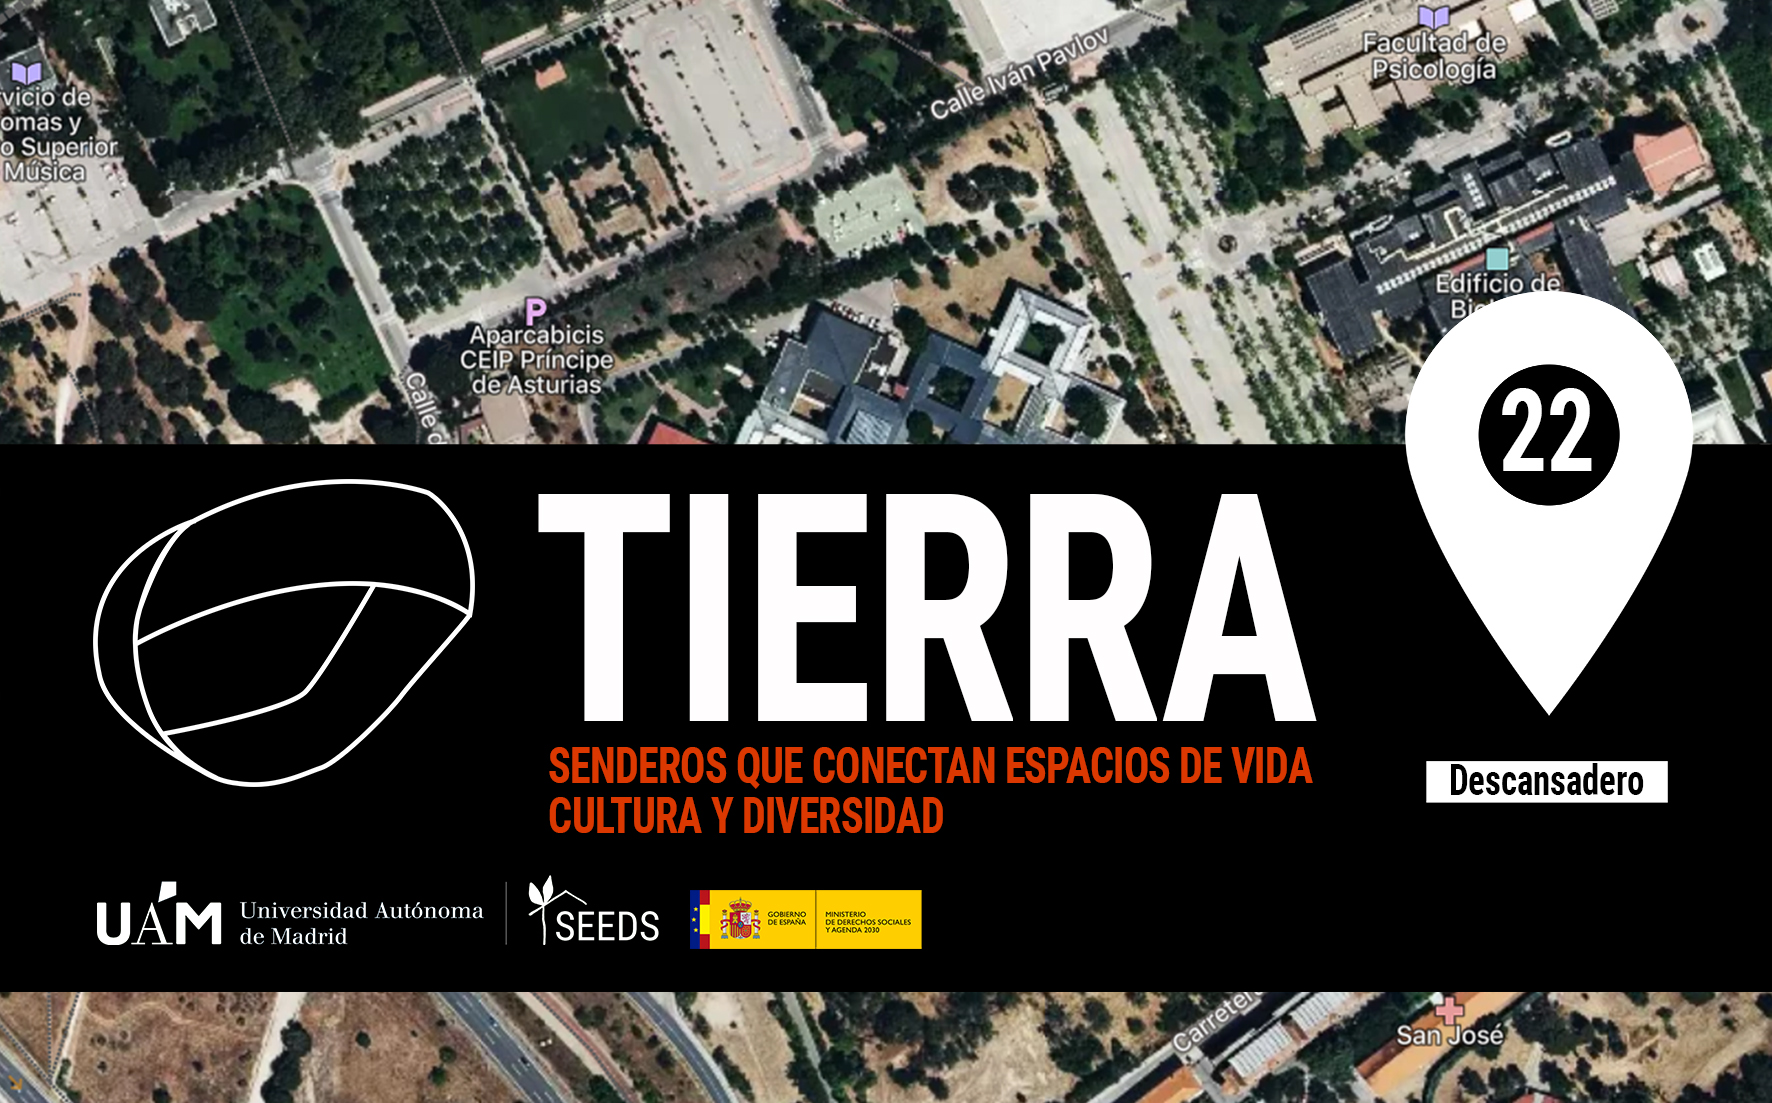 TIERRA: Descansadero 22_Senderos que conectan vida cultura diversidad